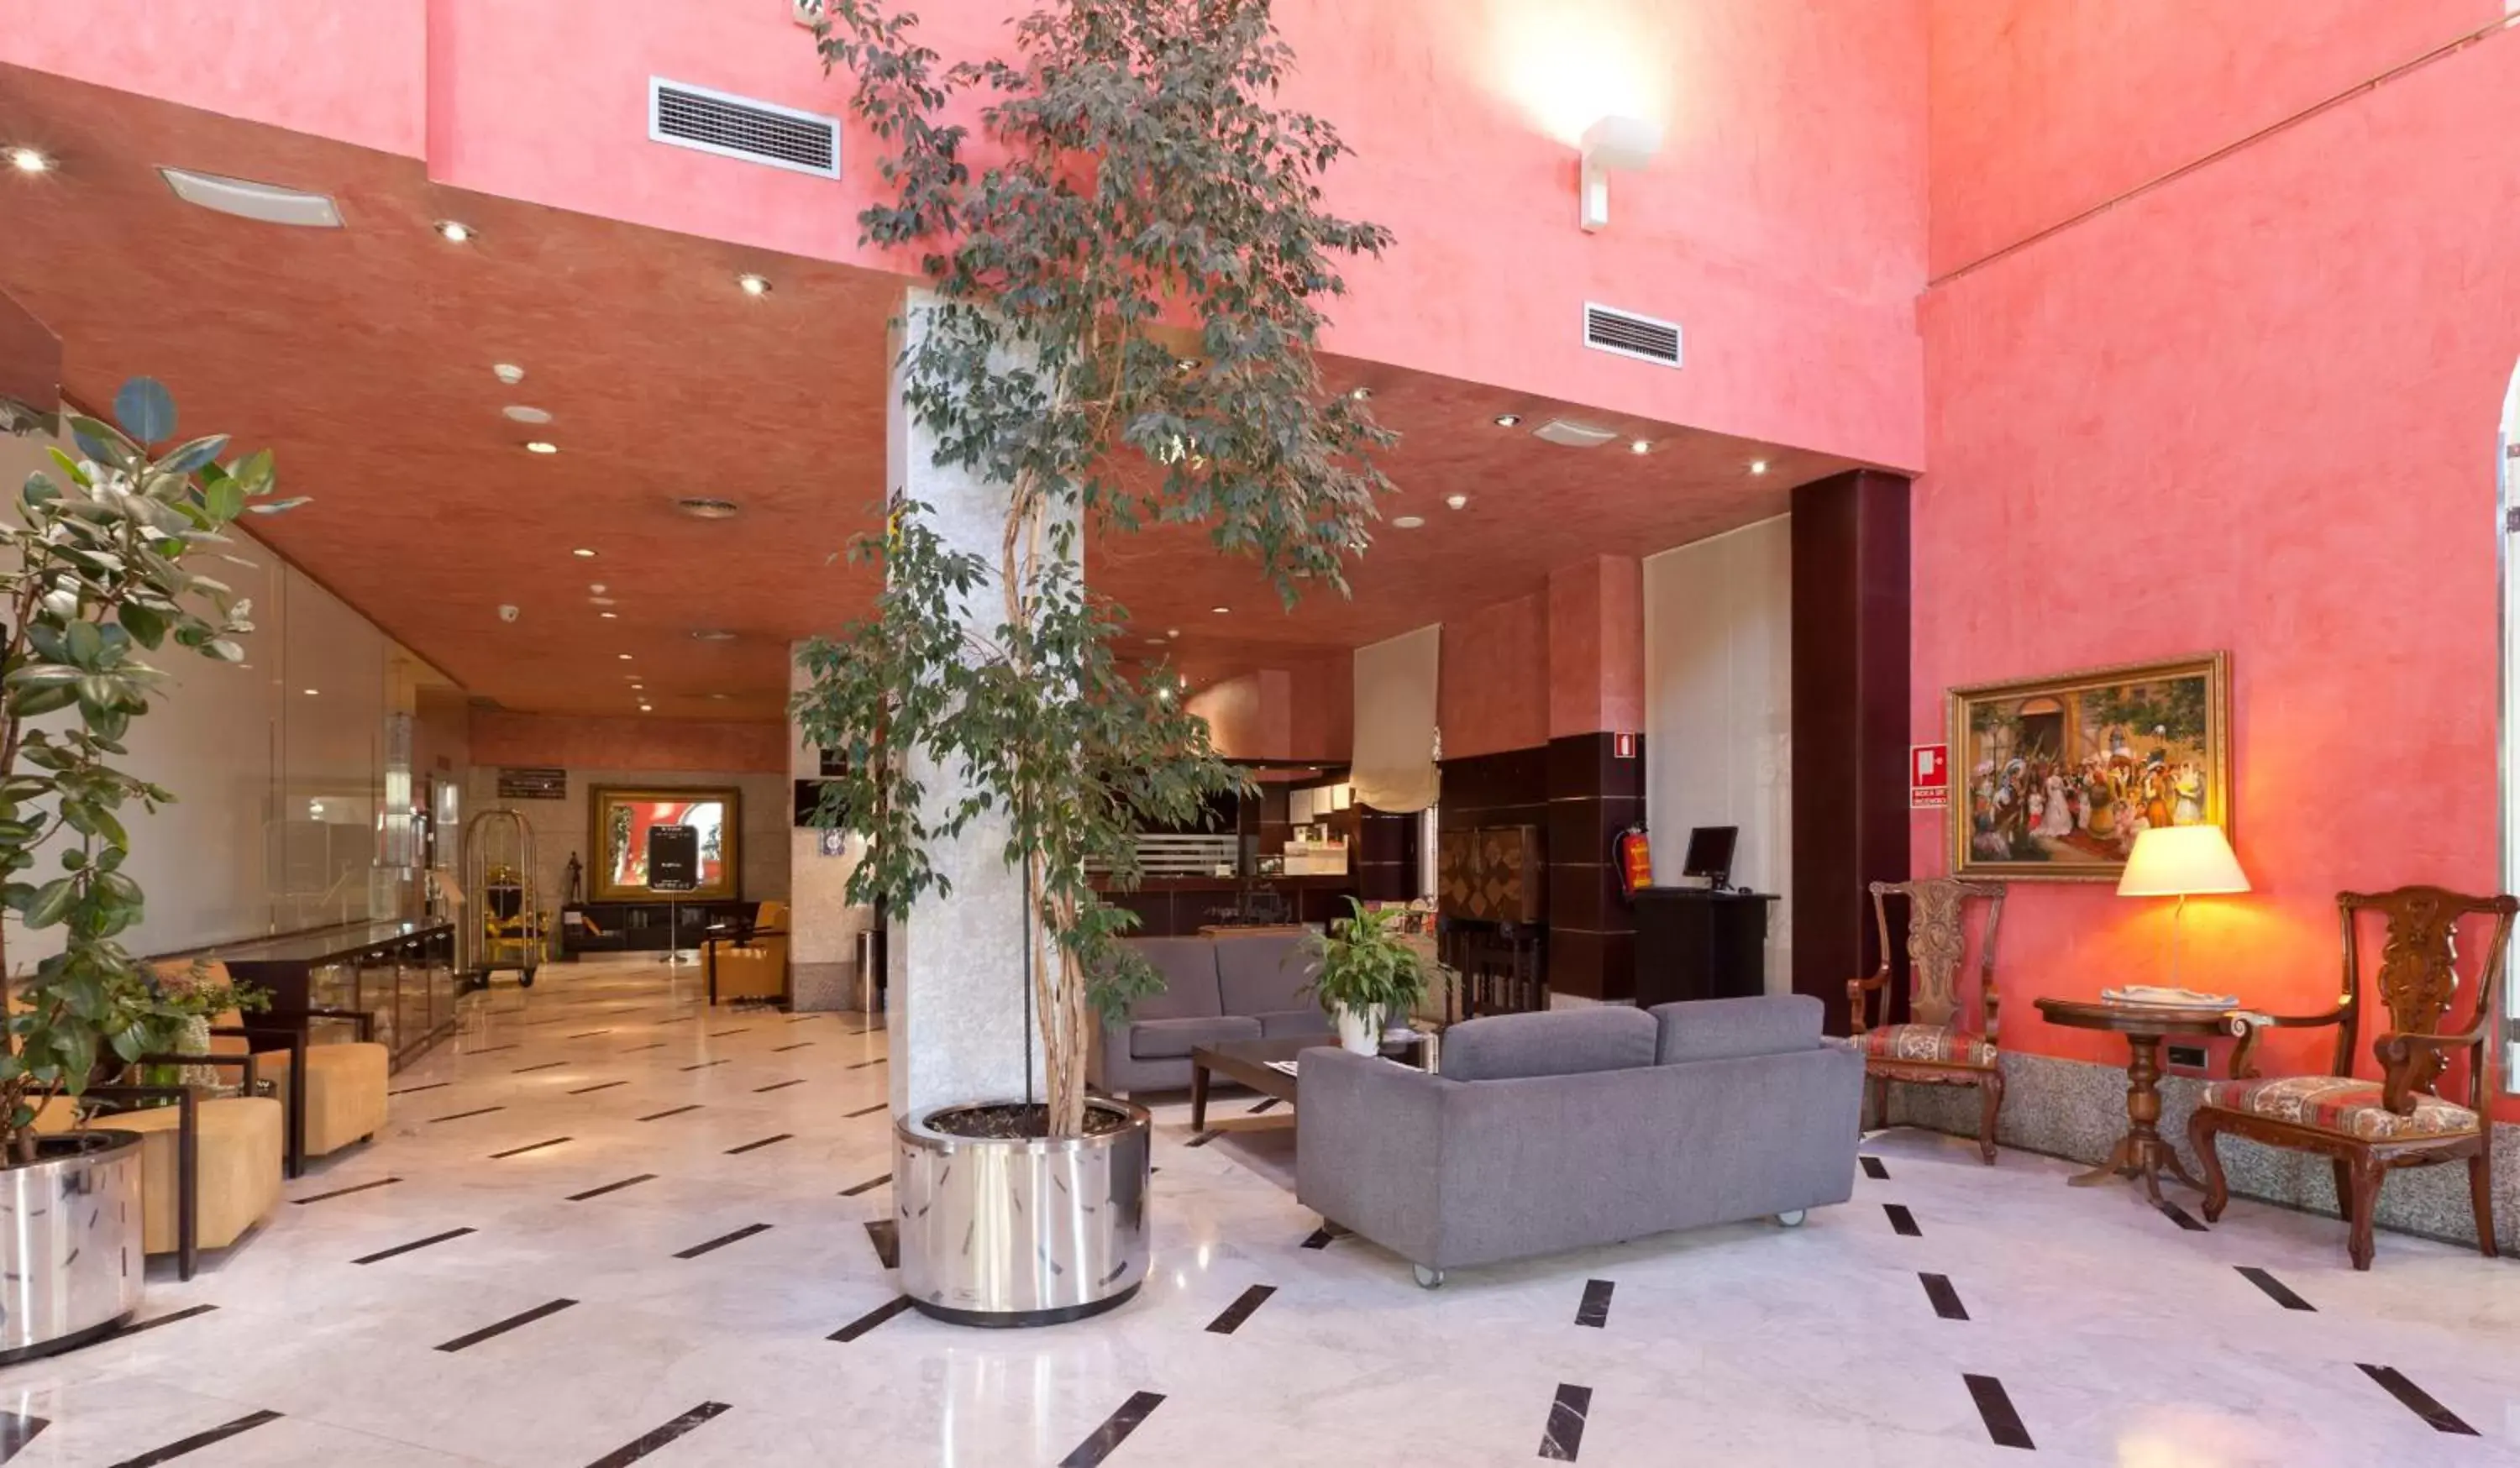 Lobby or reception, Lobby/Reception in Hotel San Juan de los Reyes